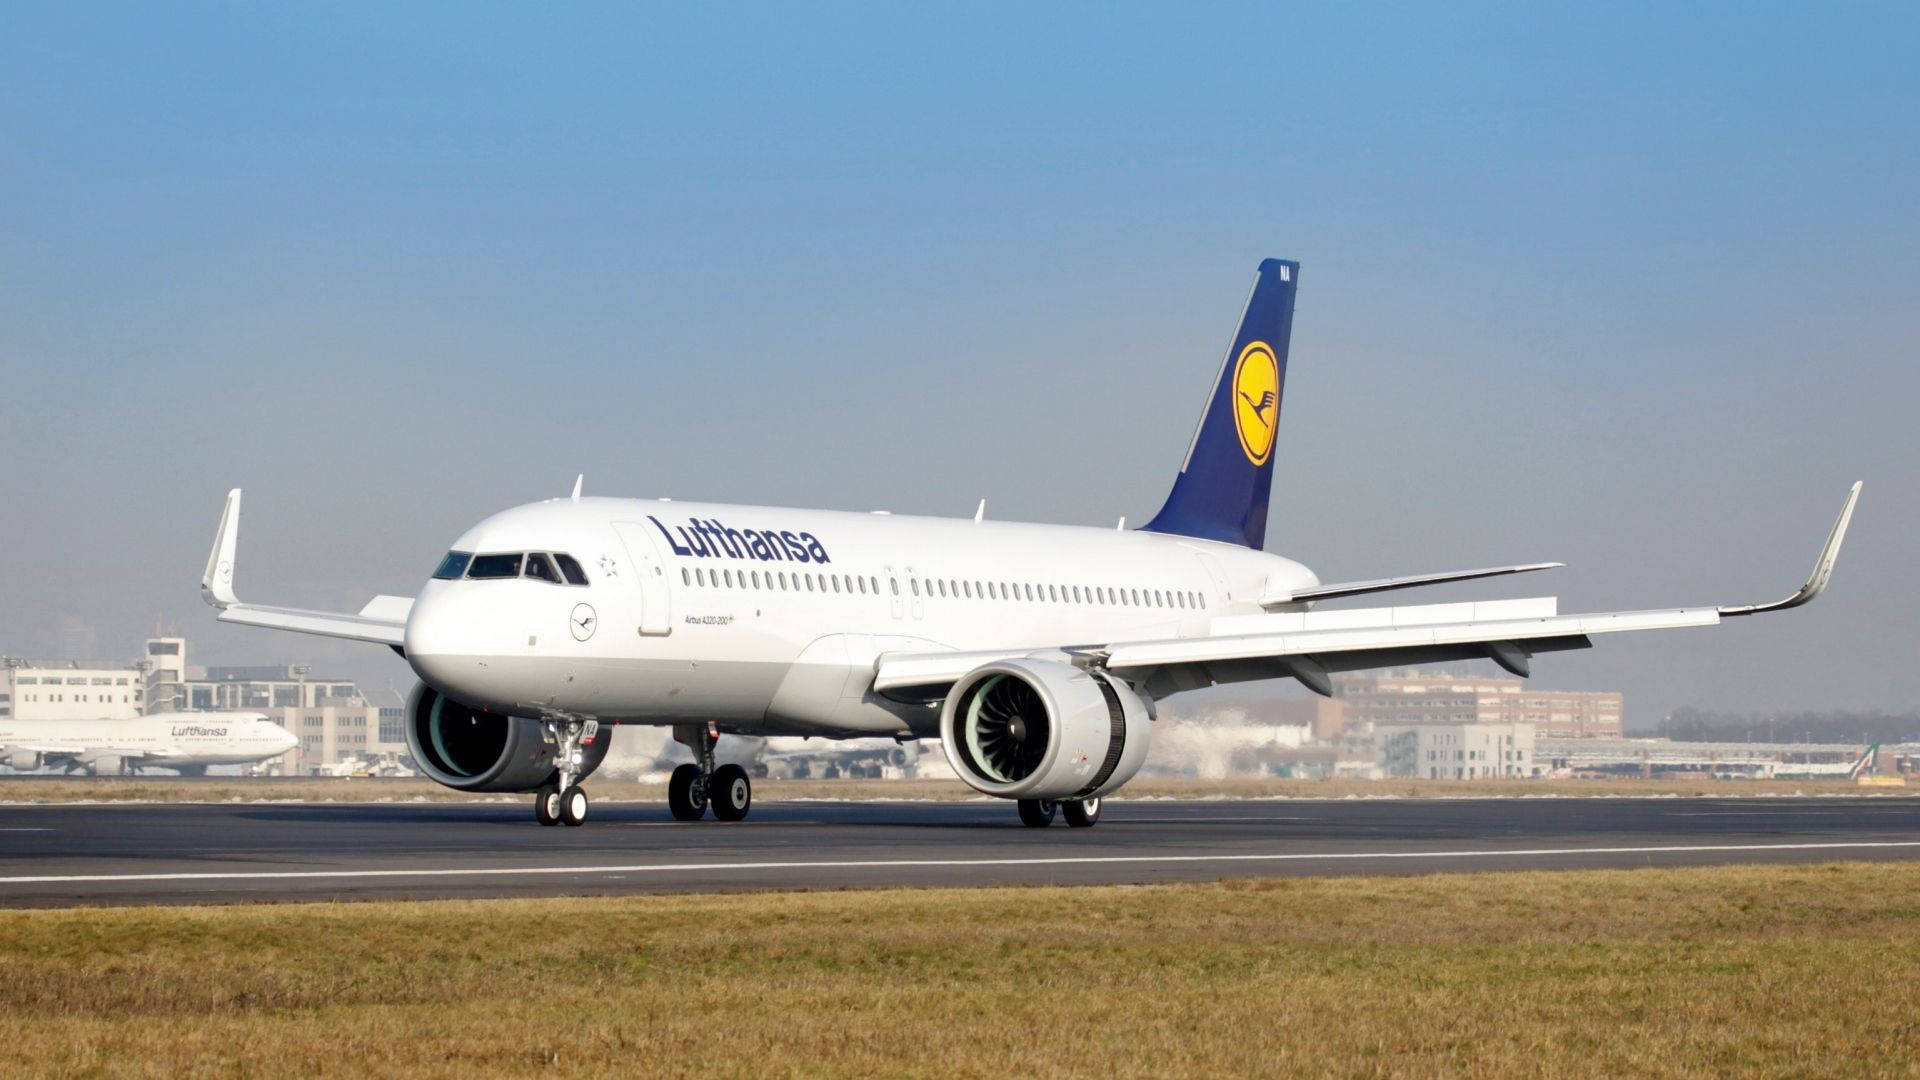 Deutsche Lufthansa Plane On The Runway Picture